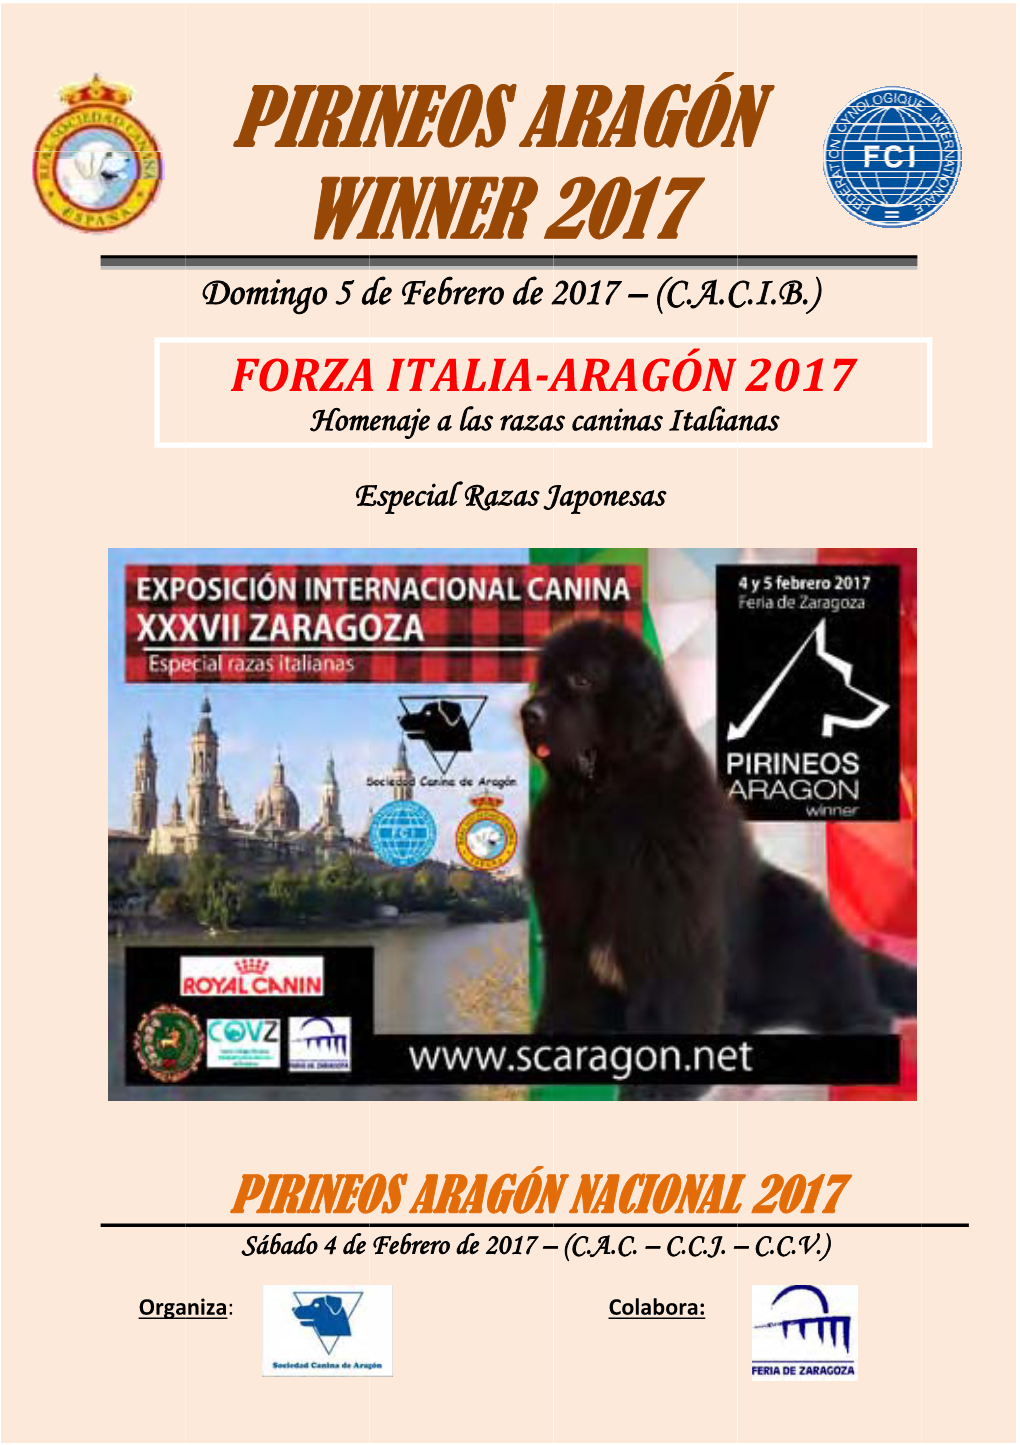 Pirin Wi Ineos a Winner 2 Aragón 2017 Ón